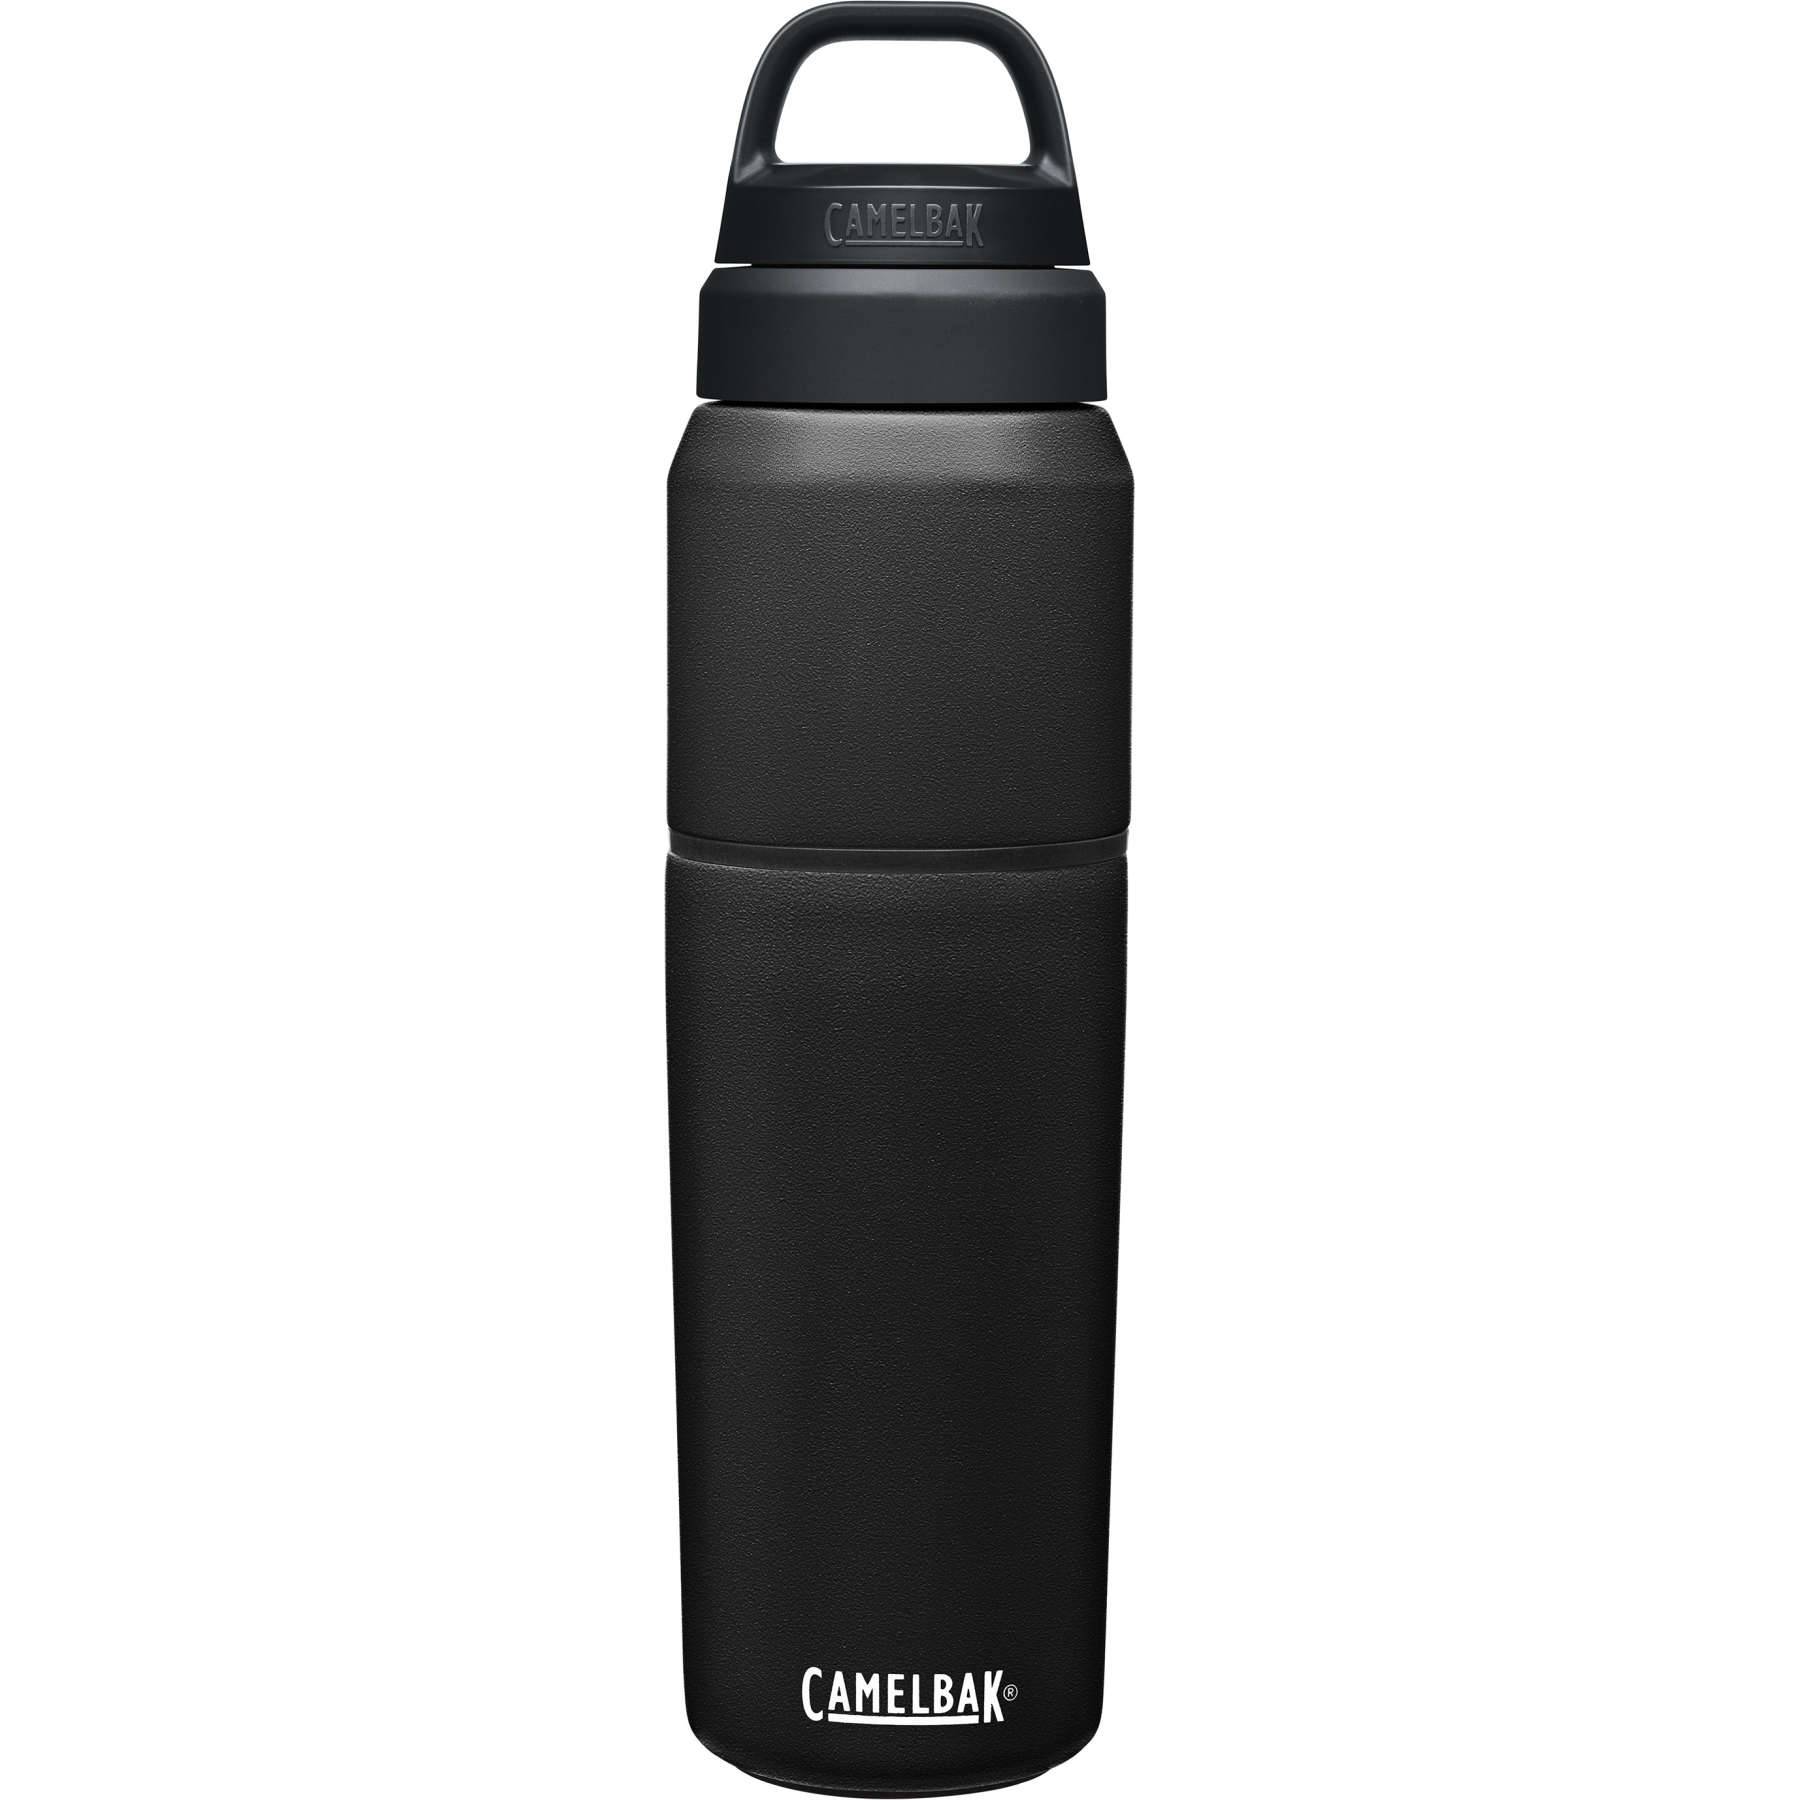 Produktbild von CamelBak Thermo Trinkflasche Multibev 650ml - schwarz